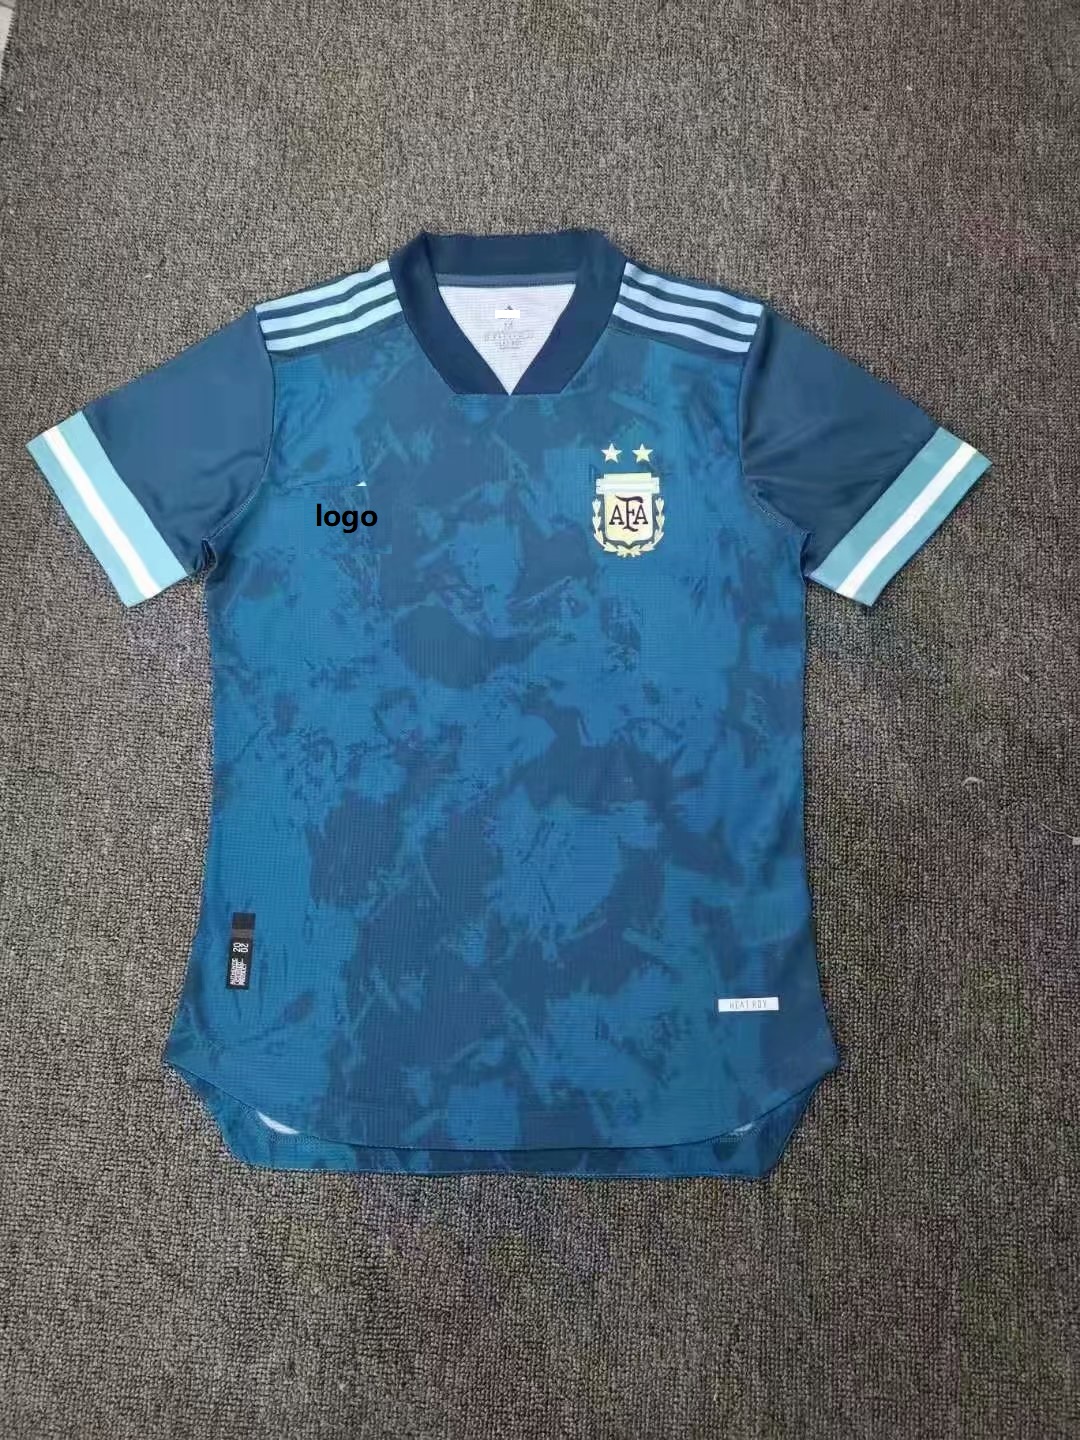 argentina away jersey 2019